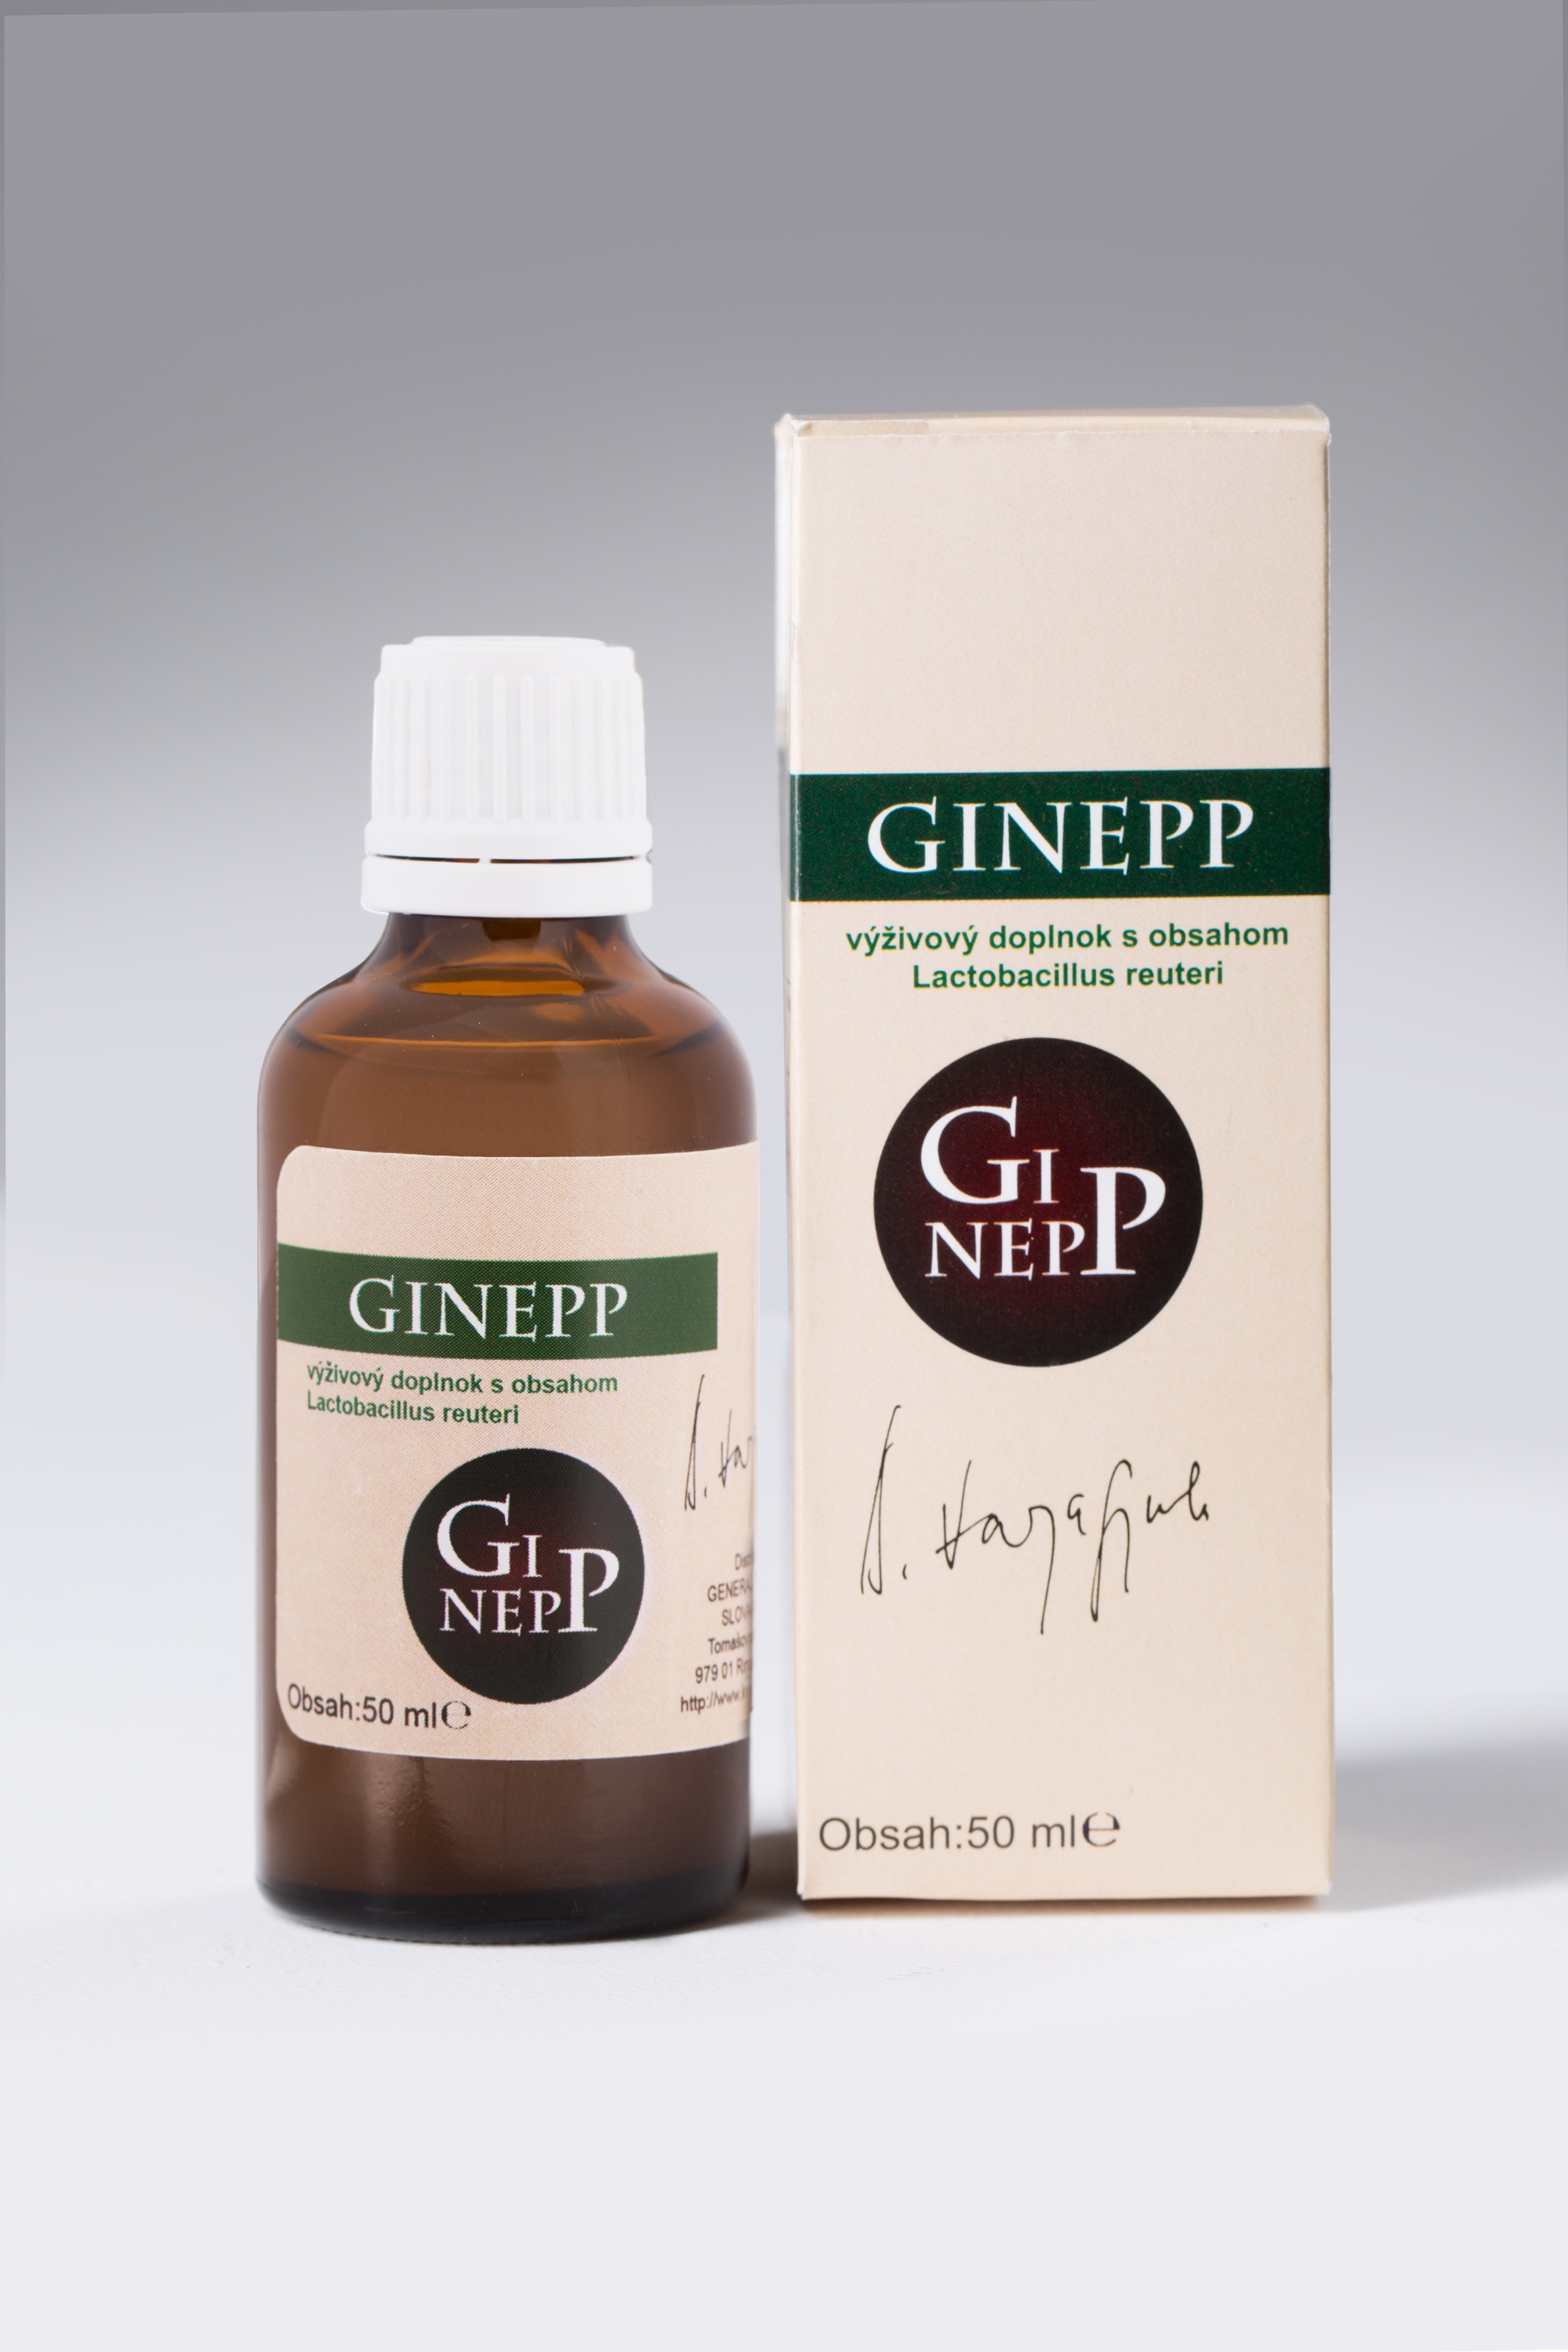 GINEPP kvapky s obsahom Lactobacillus reuteri